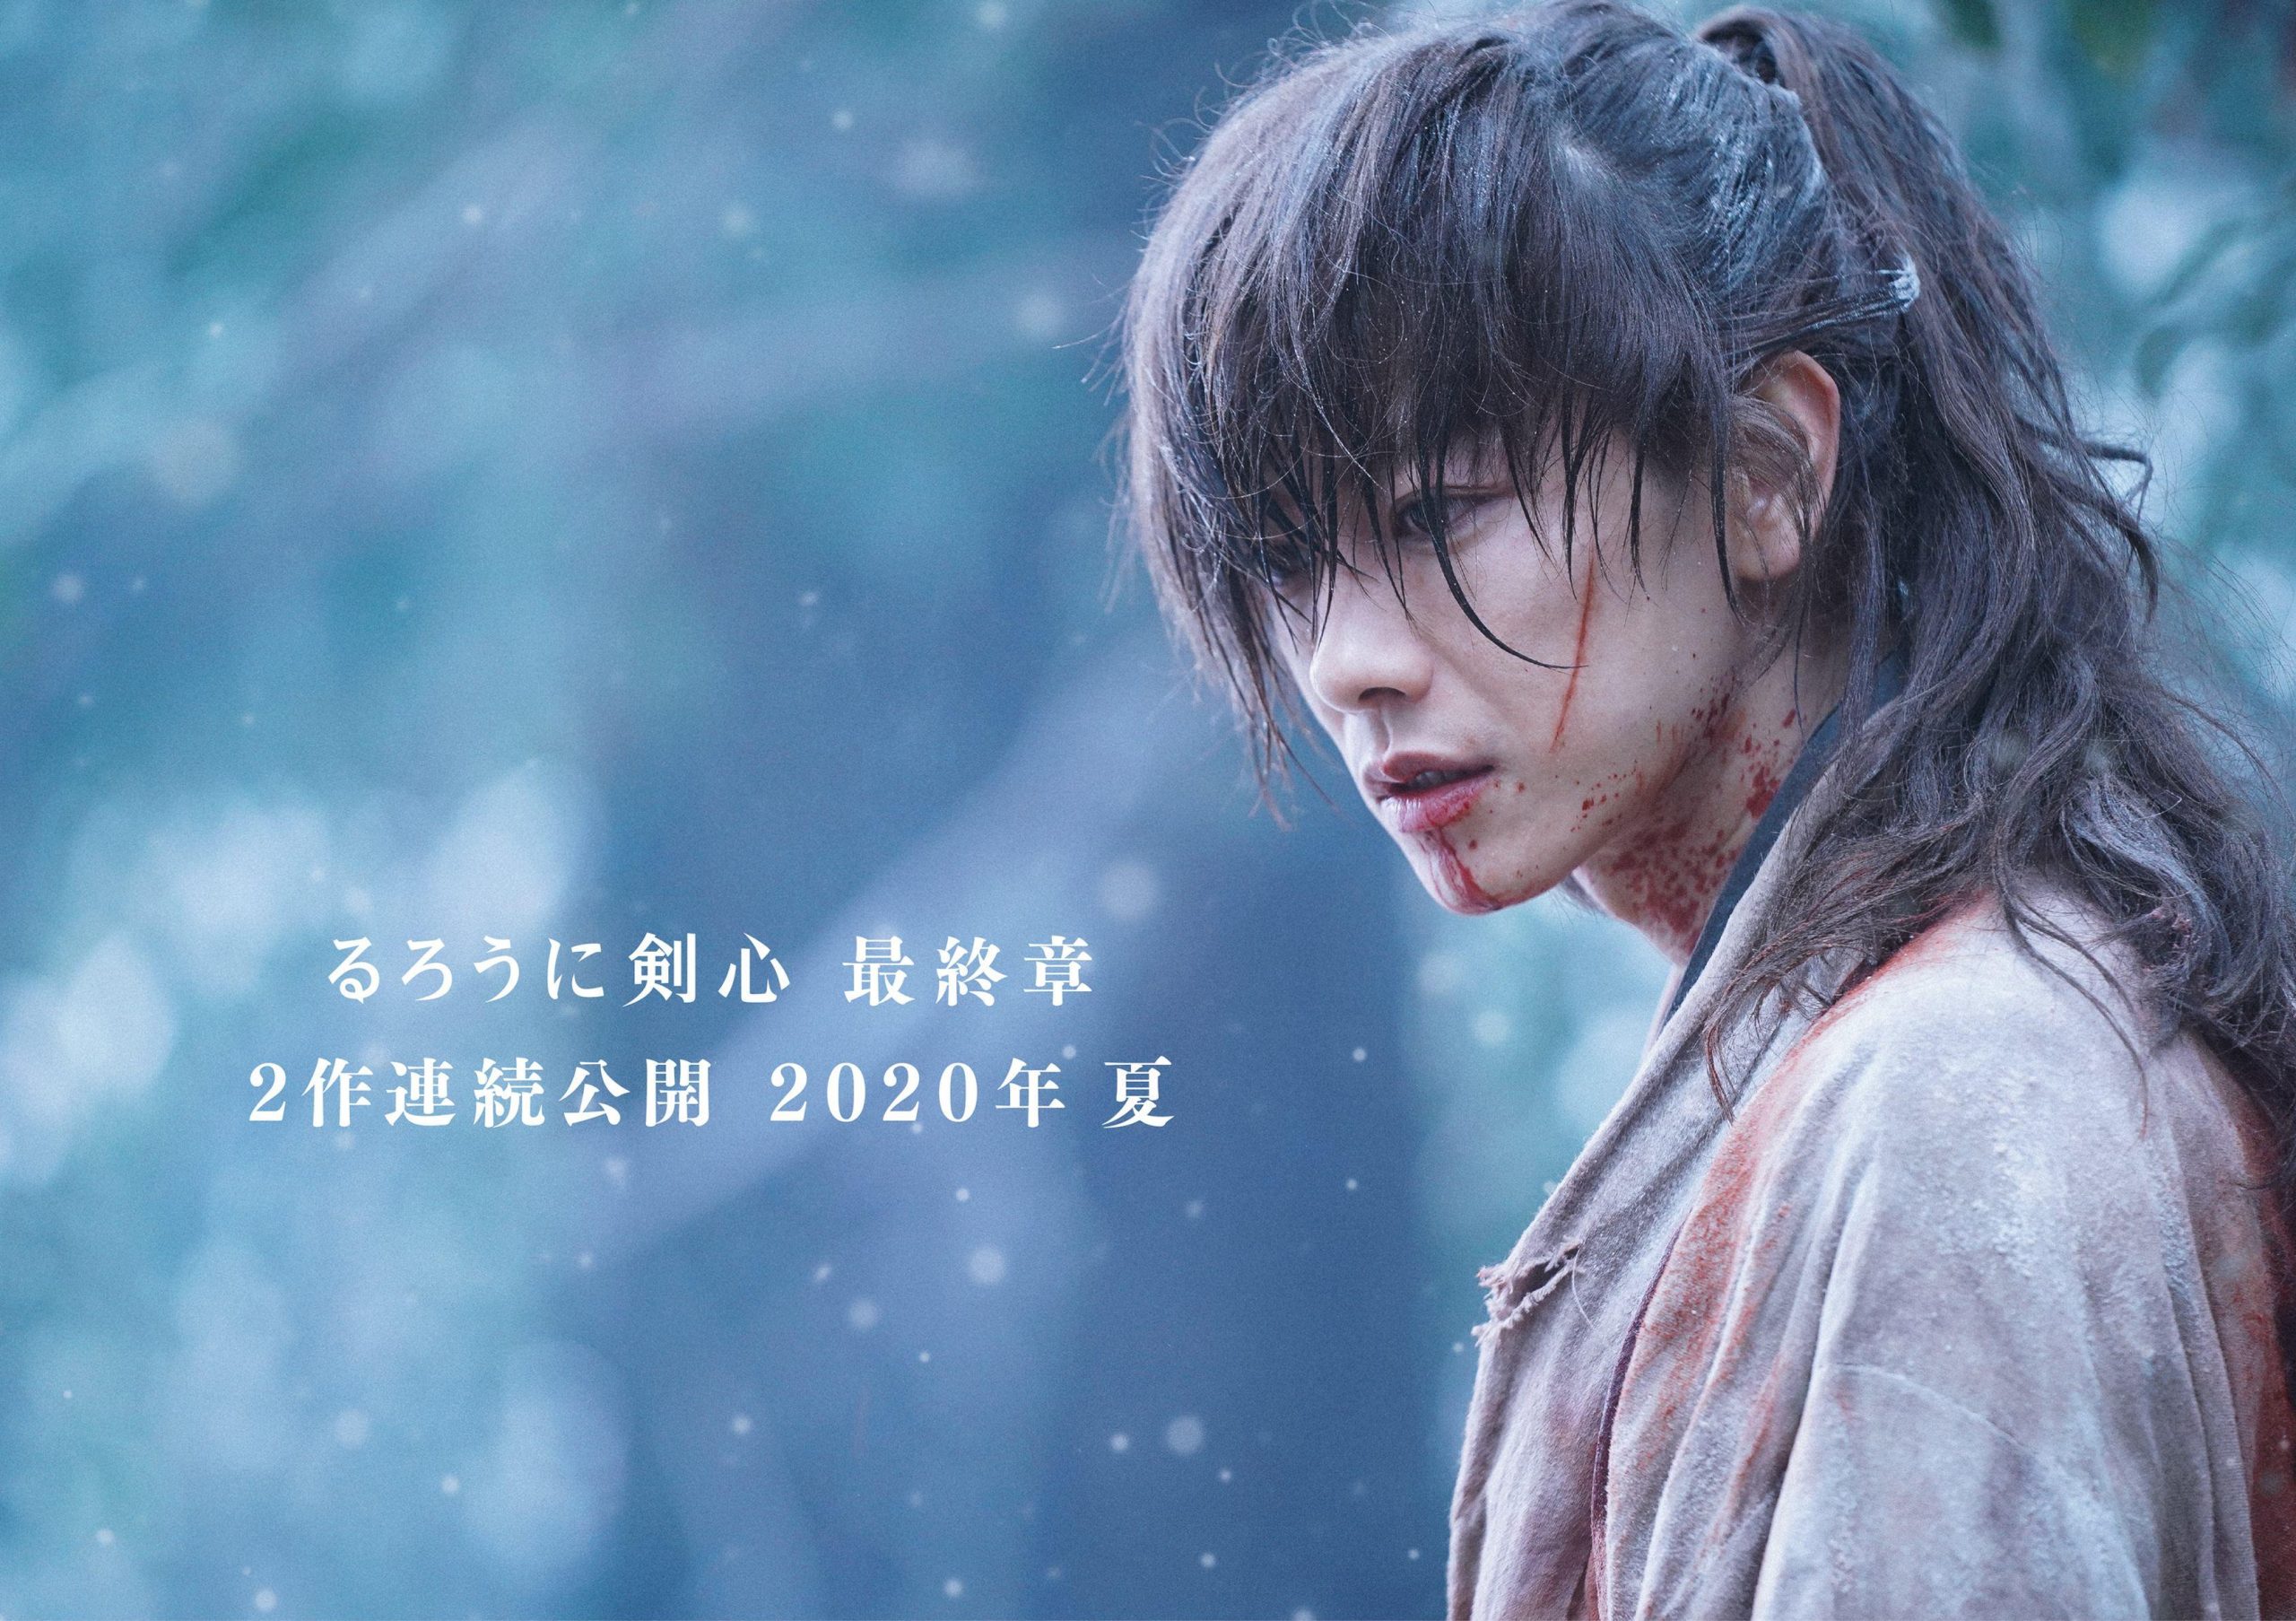 Top 15 bộ phim Nhật Bản sắp sửa ra rạp năm 2021